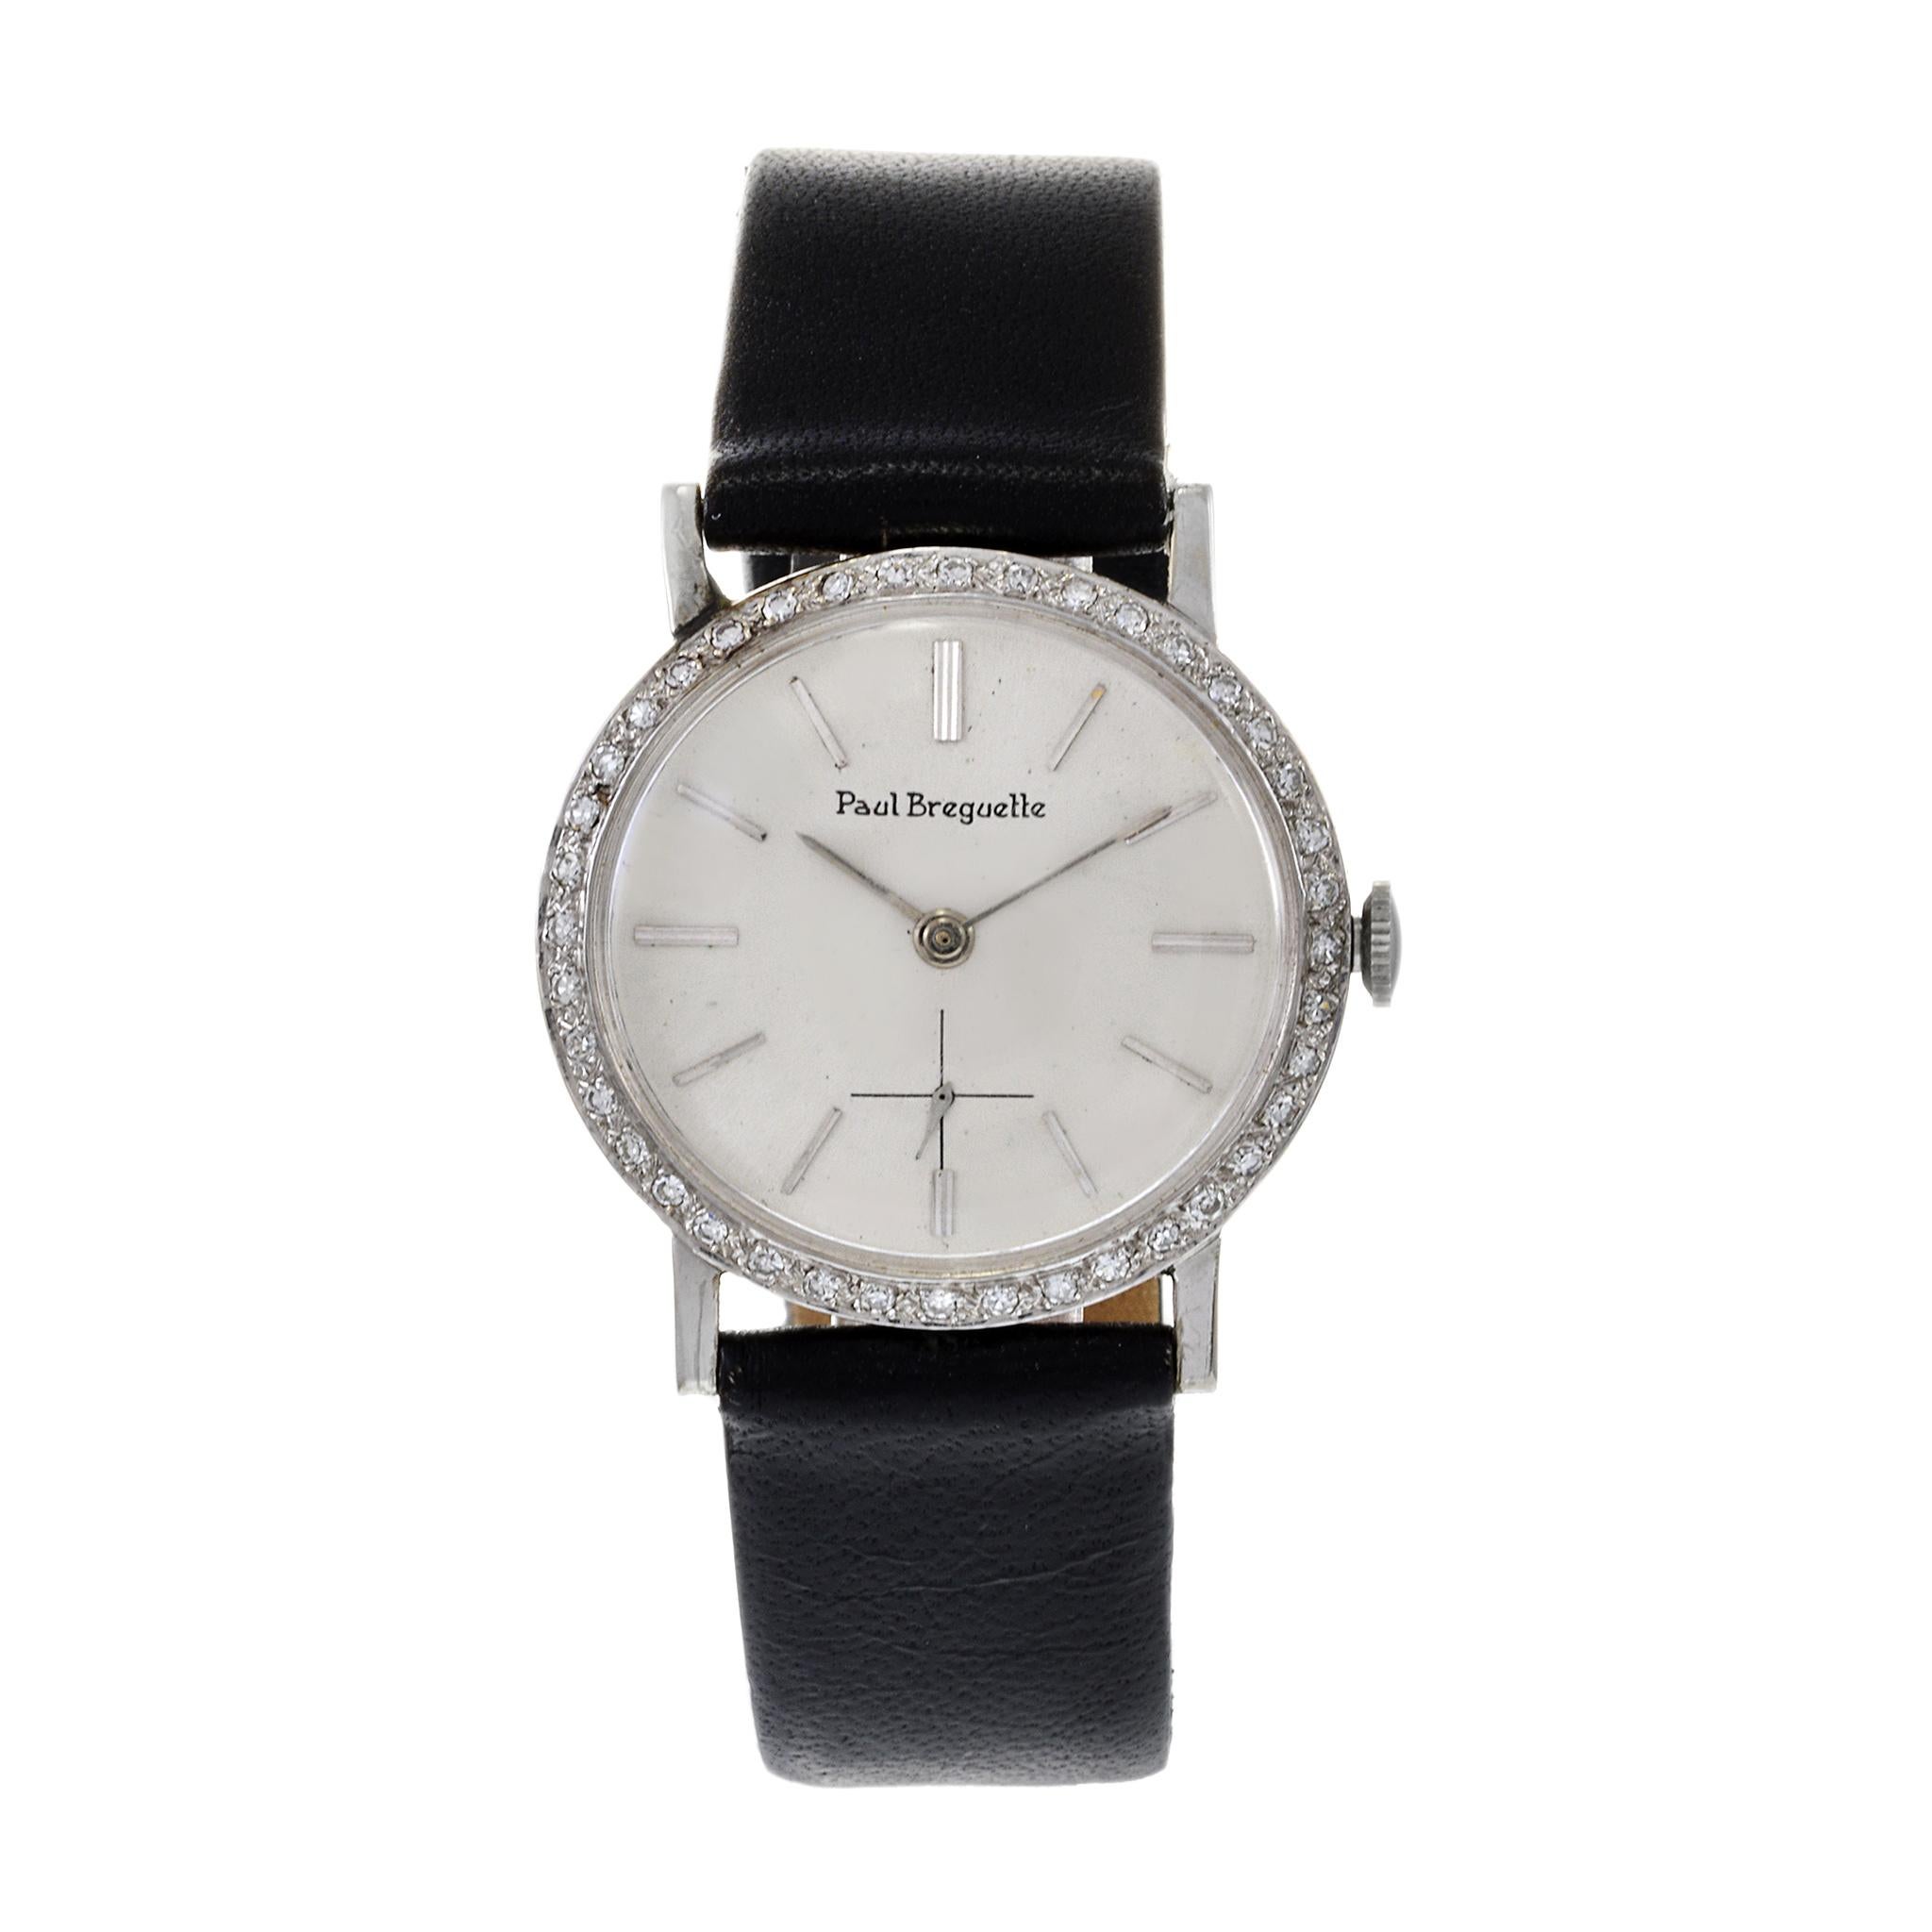 Paul Breguette était une filiale de la société horlogère Ebel. Cette exquise montre-bracelet des années 1970 est en or blanc 14 carats avec une lunette de manufacture en diamants. Le poids total des diamants est de 0.60CT TDW. Cette montre est